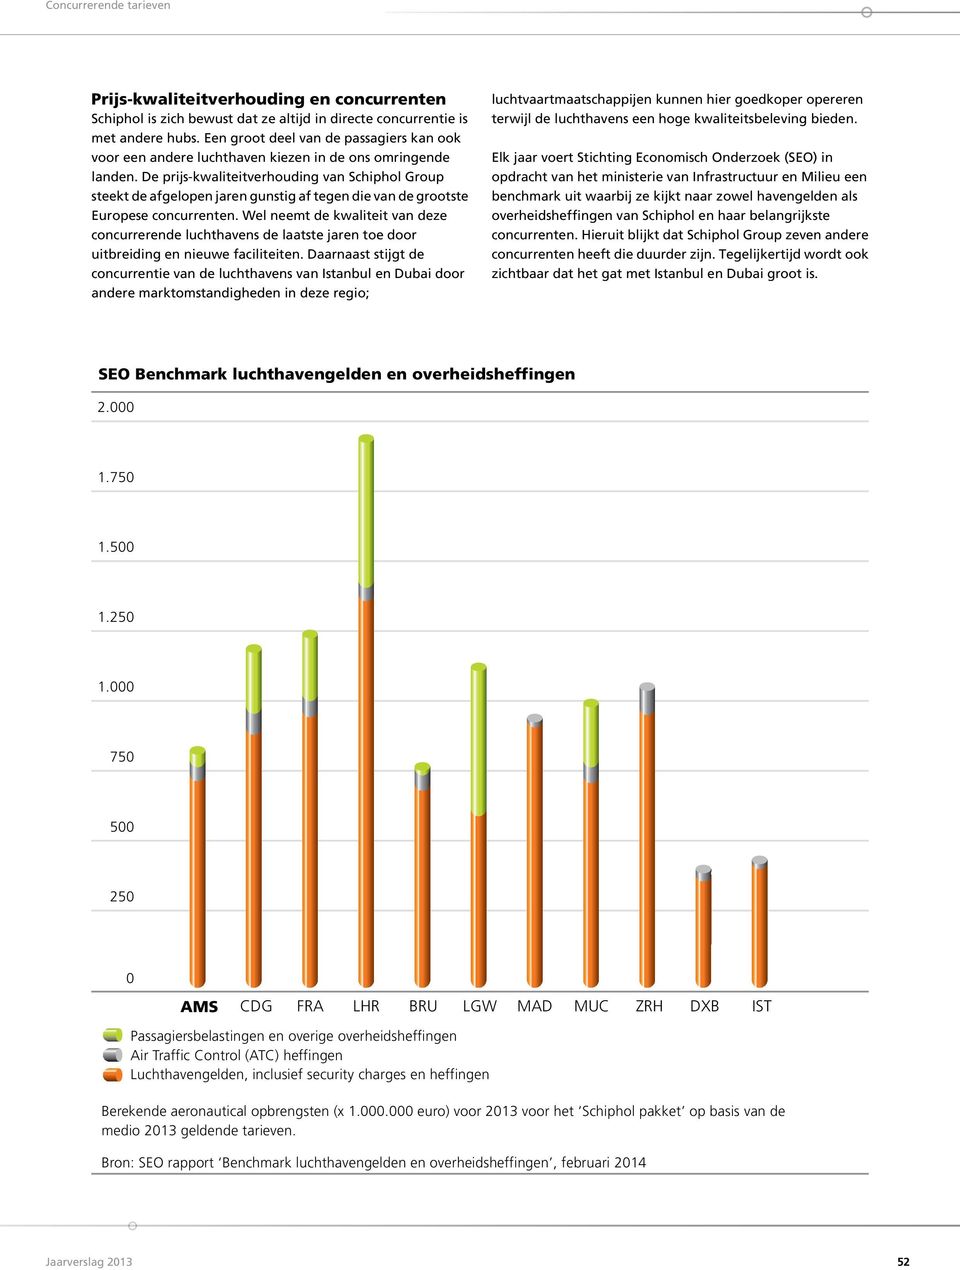 De prijs-kwaliteitverhouding van Schiphol Group steekt de afgelopen jaren gunstig af tegen die van de grootste Europese concurrenten.